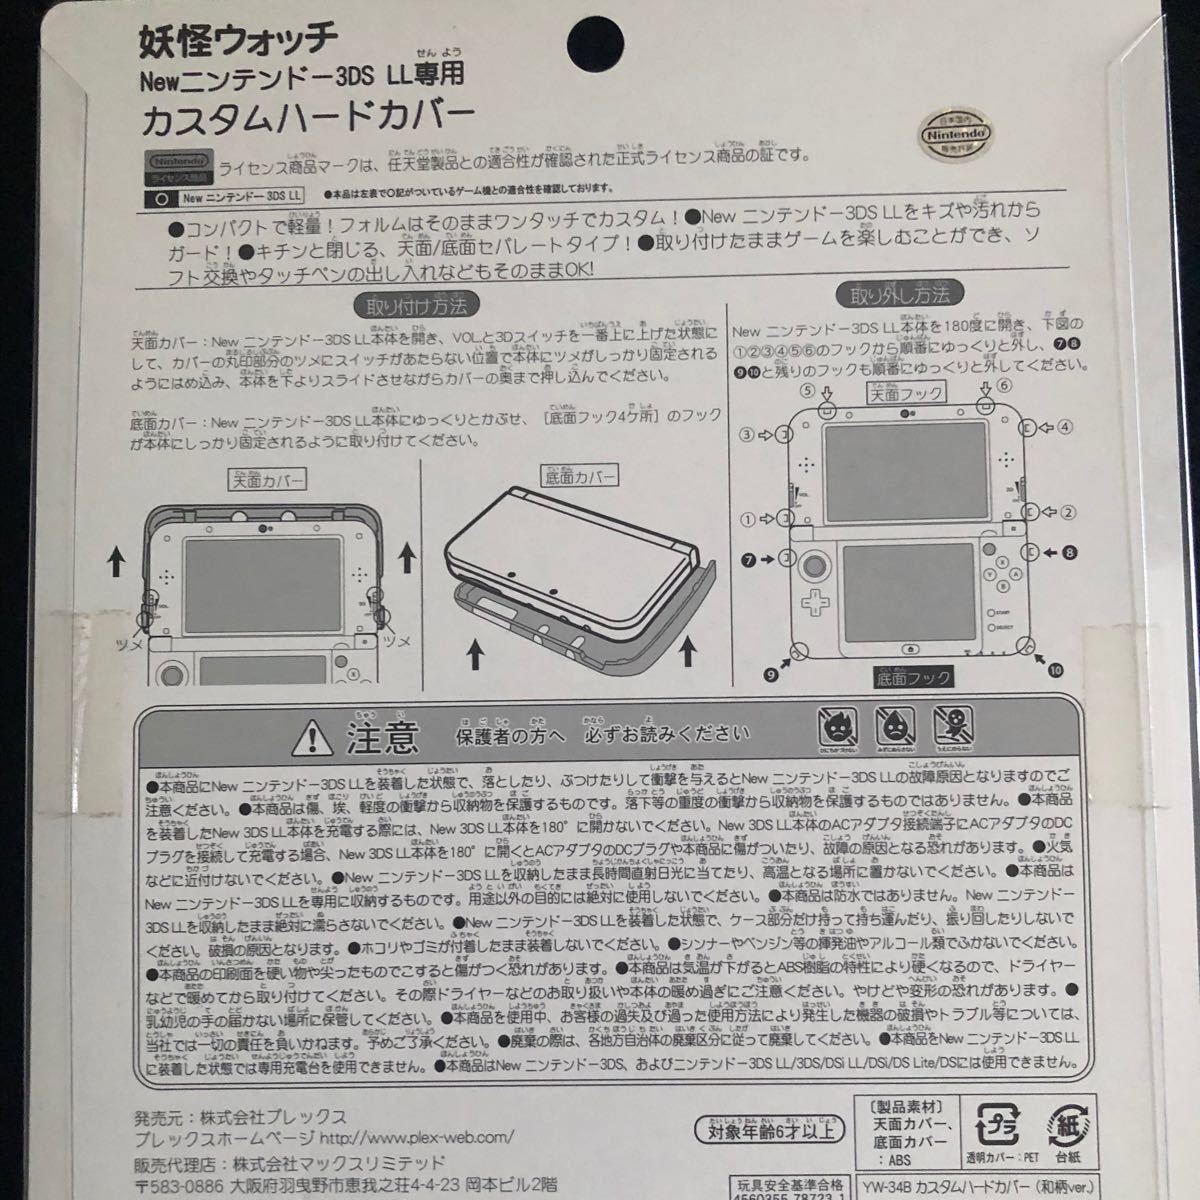 【新品】妖怪ウォッチ new NINTENDO 3DS LL 専用 カスタムハードカバー 和柄 Ver.